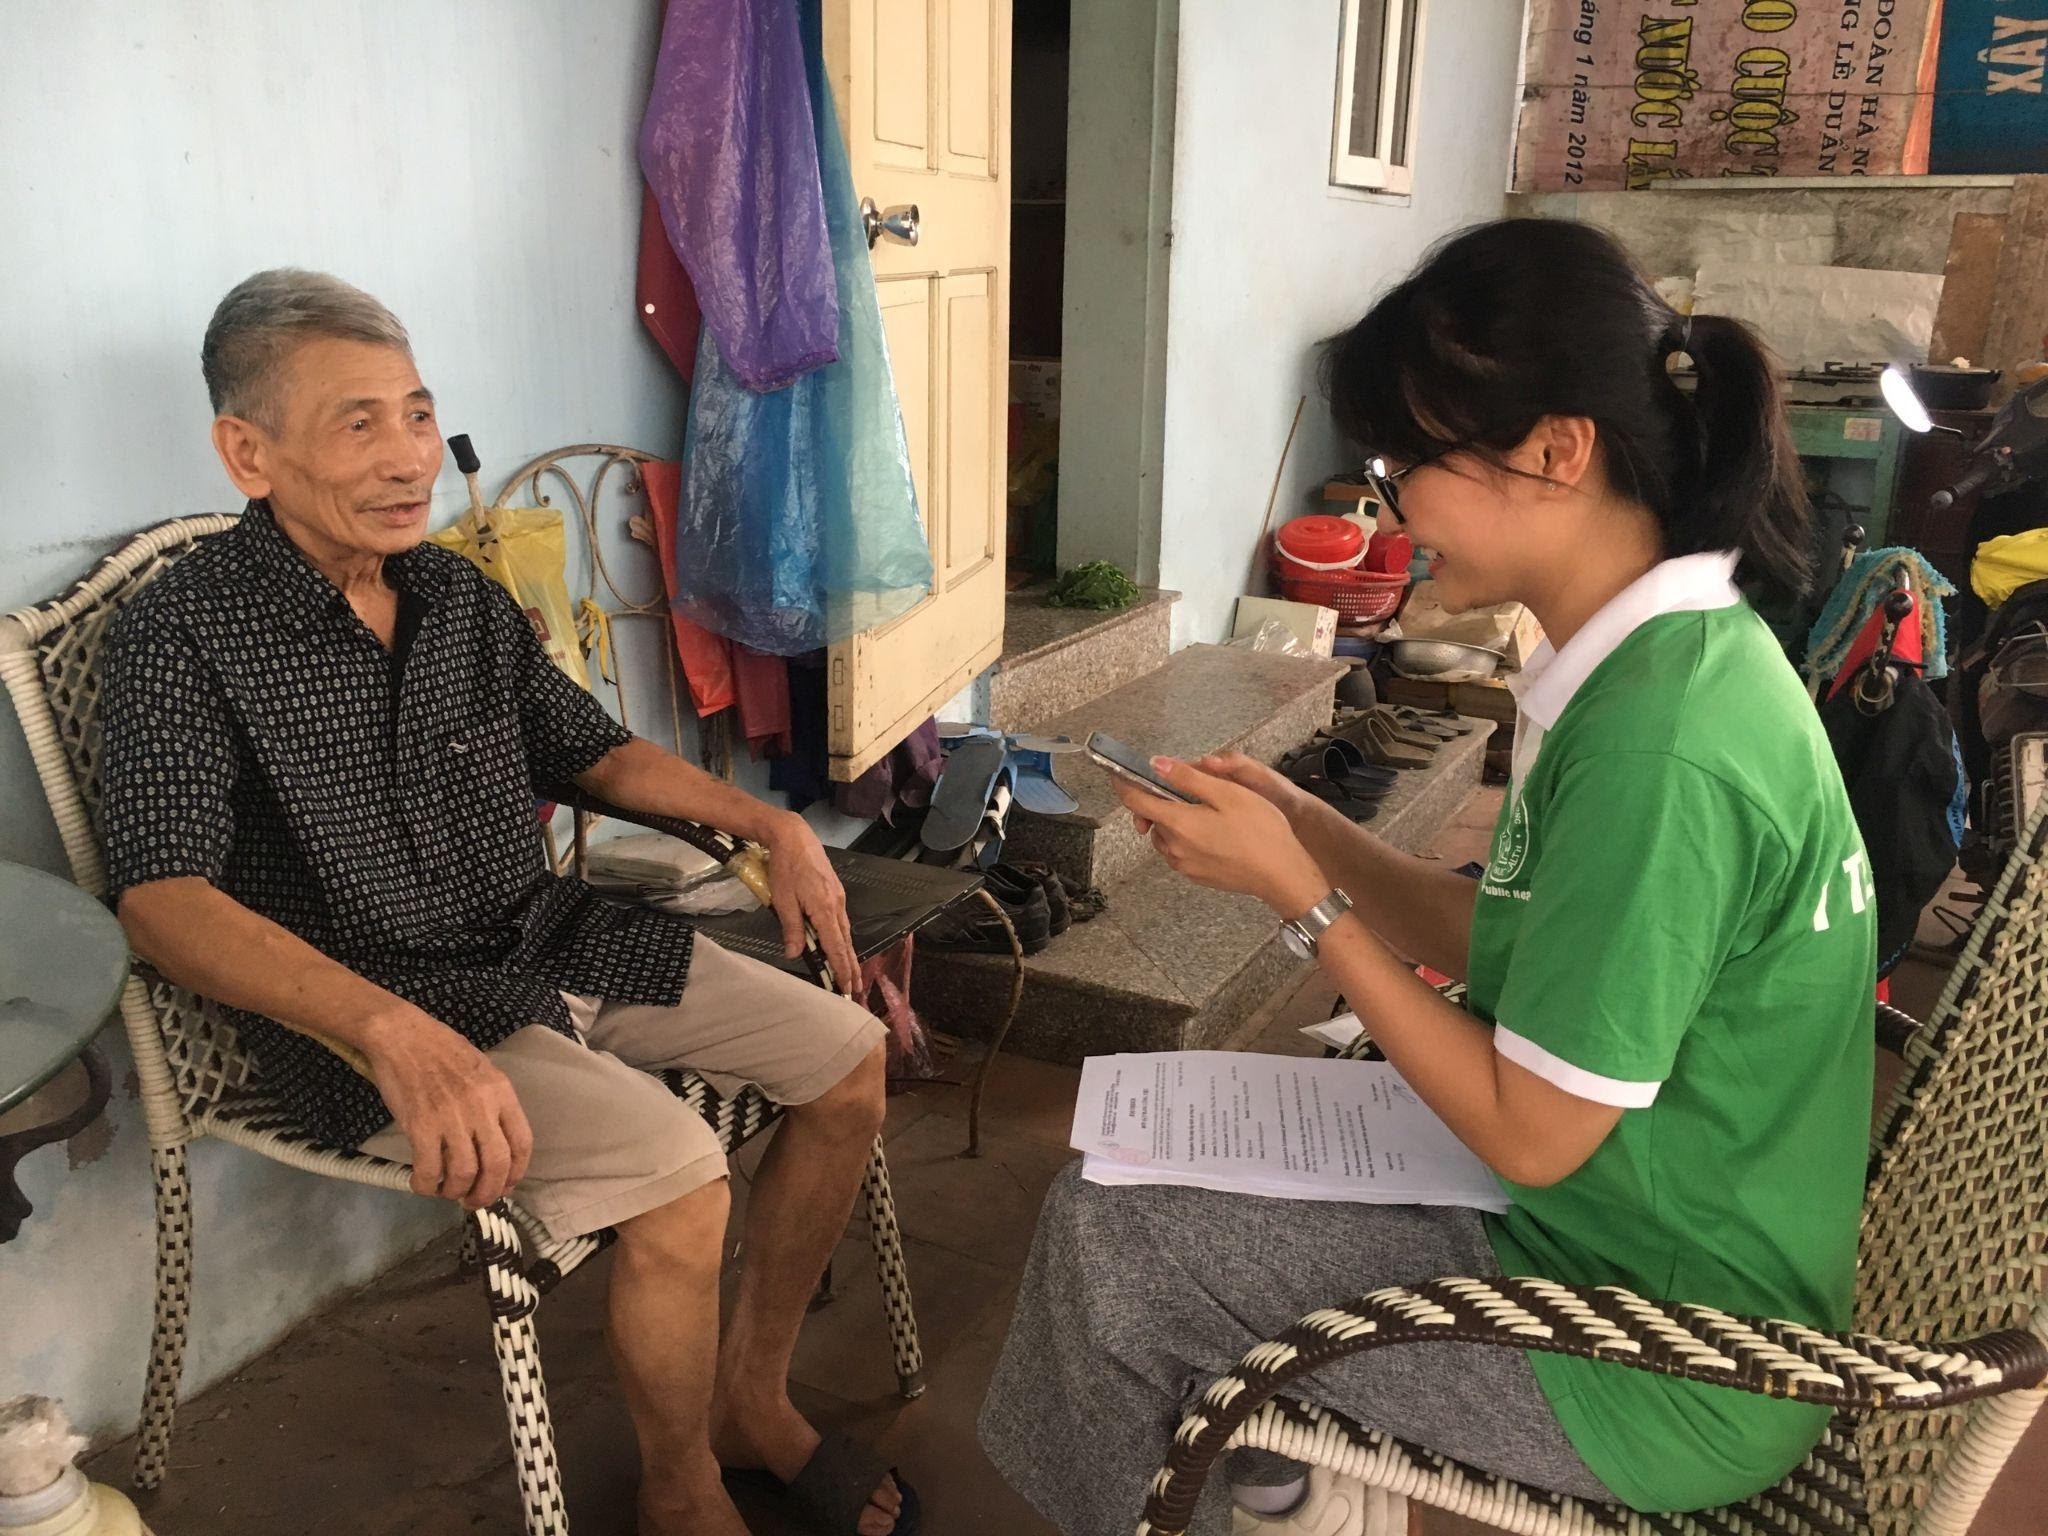 Thành viên nhóm dự án phỏng vấn người cao tuổi quận Bắc Từ Liêm | Ảnh: NVCC via Live&Learn